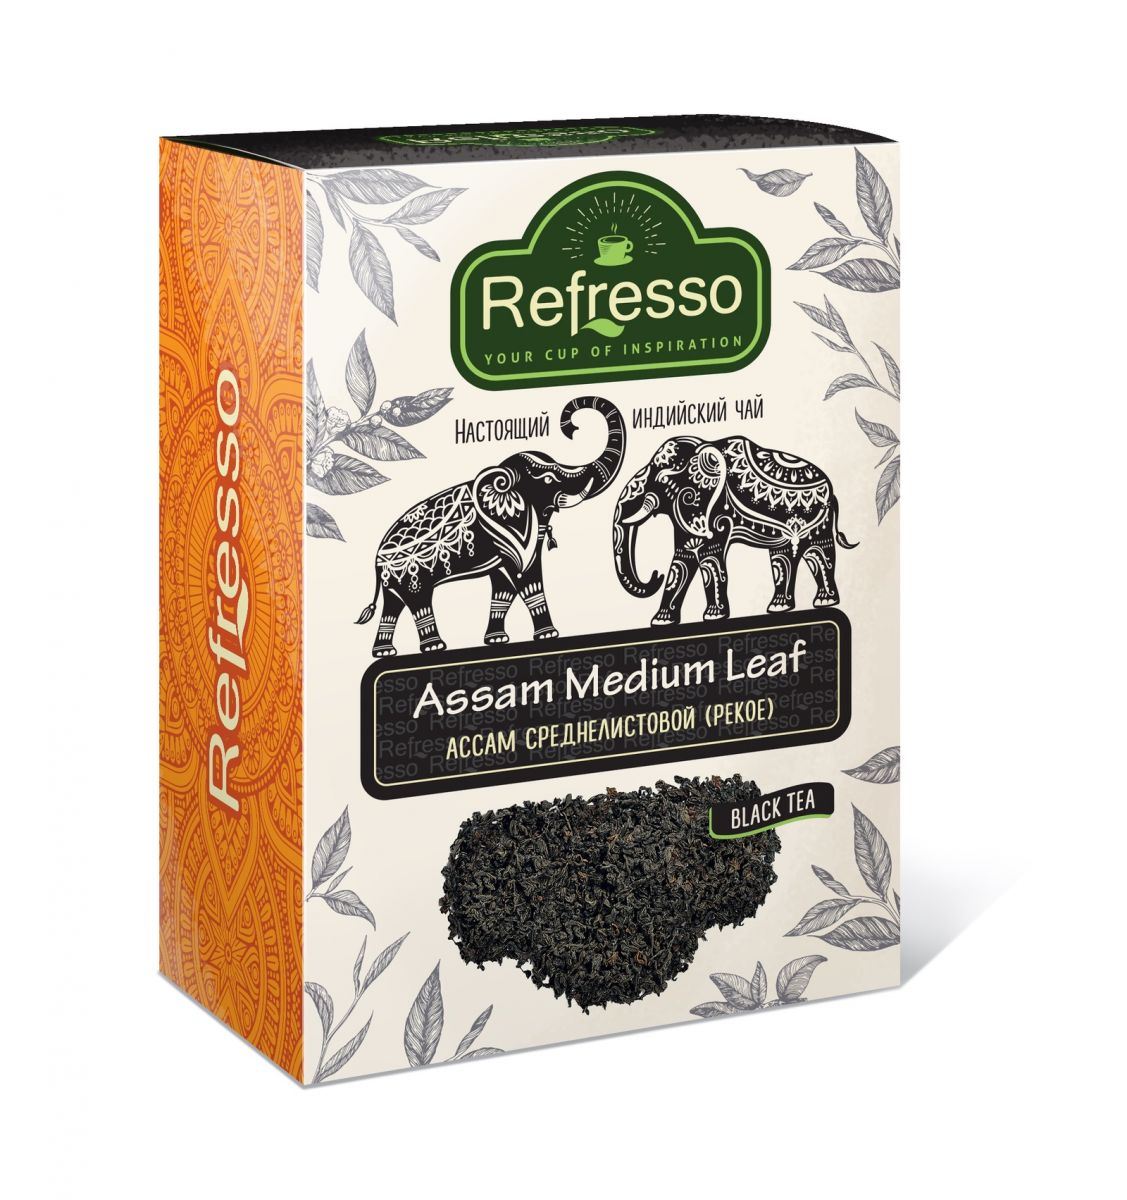 ASSAM Medium Leaf Black Tea, Refresso (АССАМ Среднелистовой (PEKOE) черный чай, Рефрессо), 100 г.